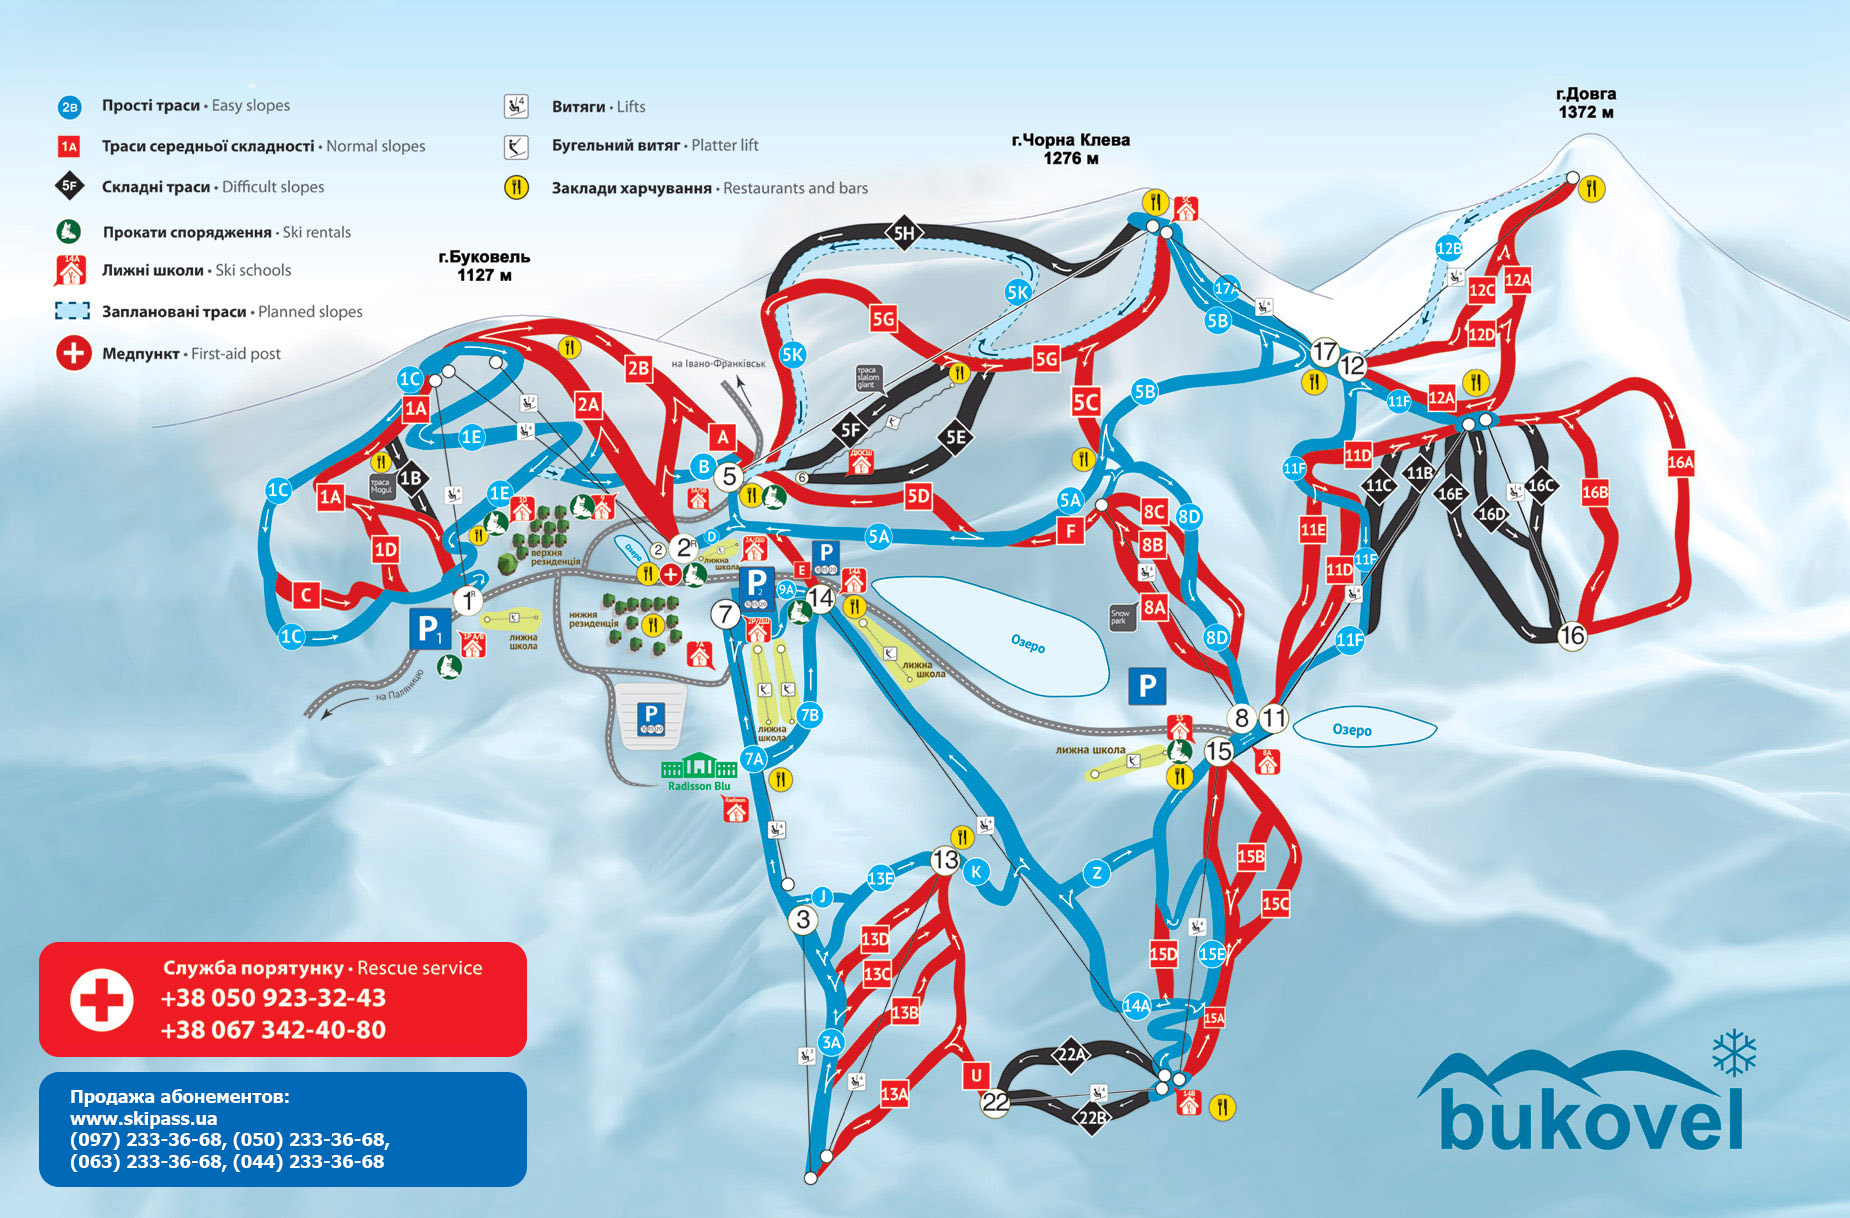 Схема горнолыжных трасс и подъемников Буковеля 